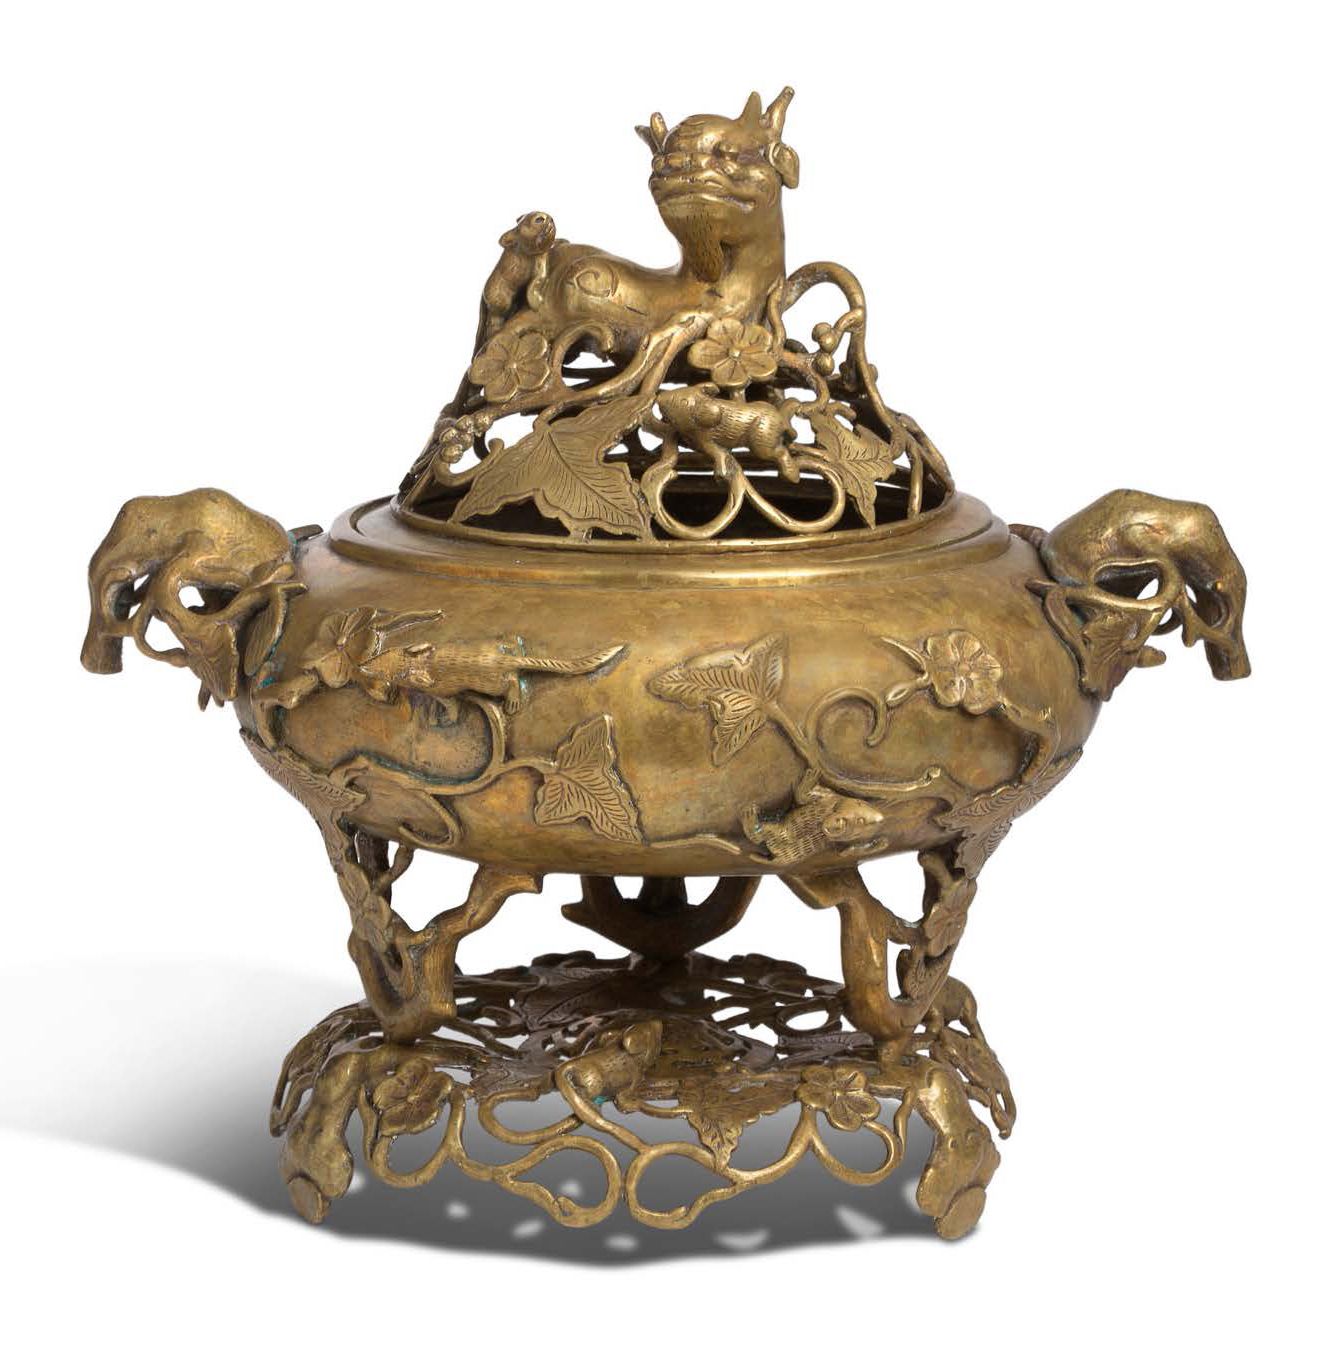 Vietnam vers 1900 
Covered tripod perfume burner, in bronze, the swollen body de&hellip;